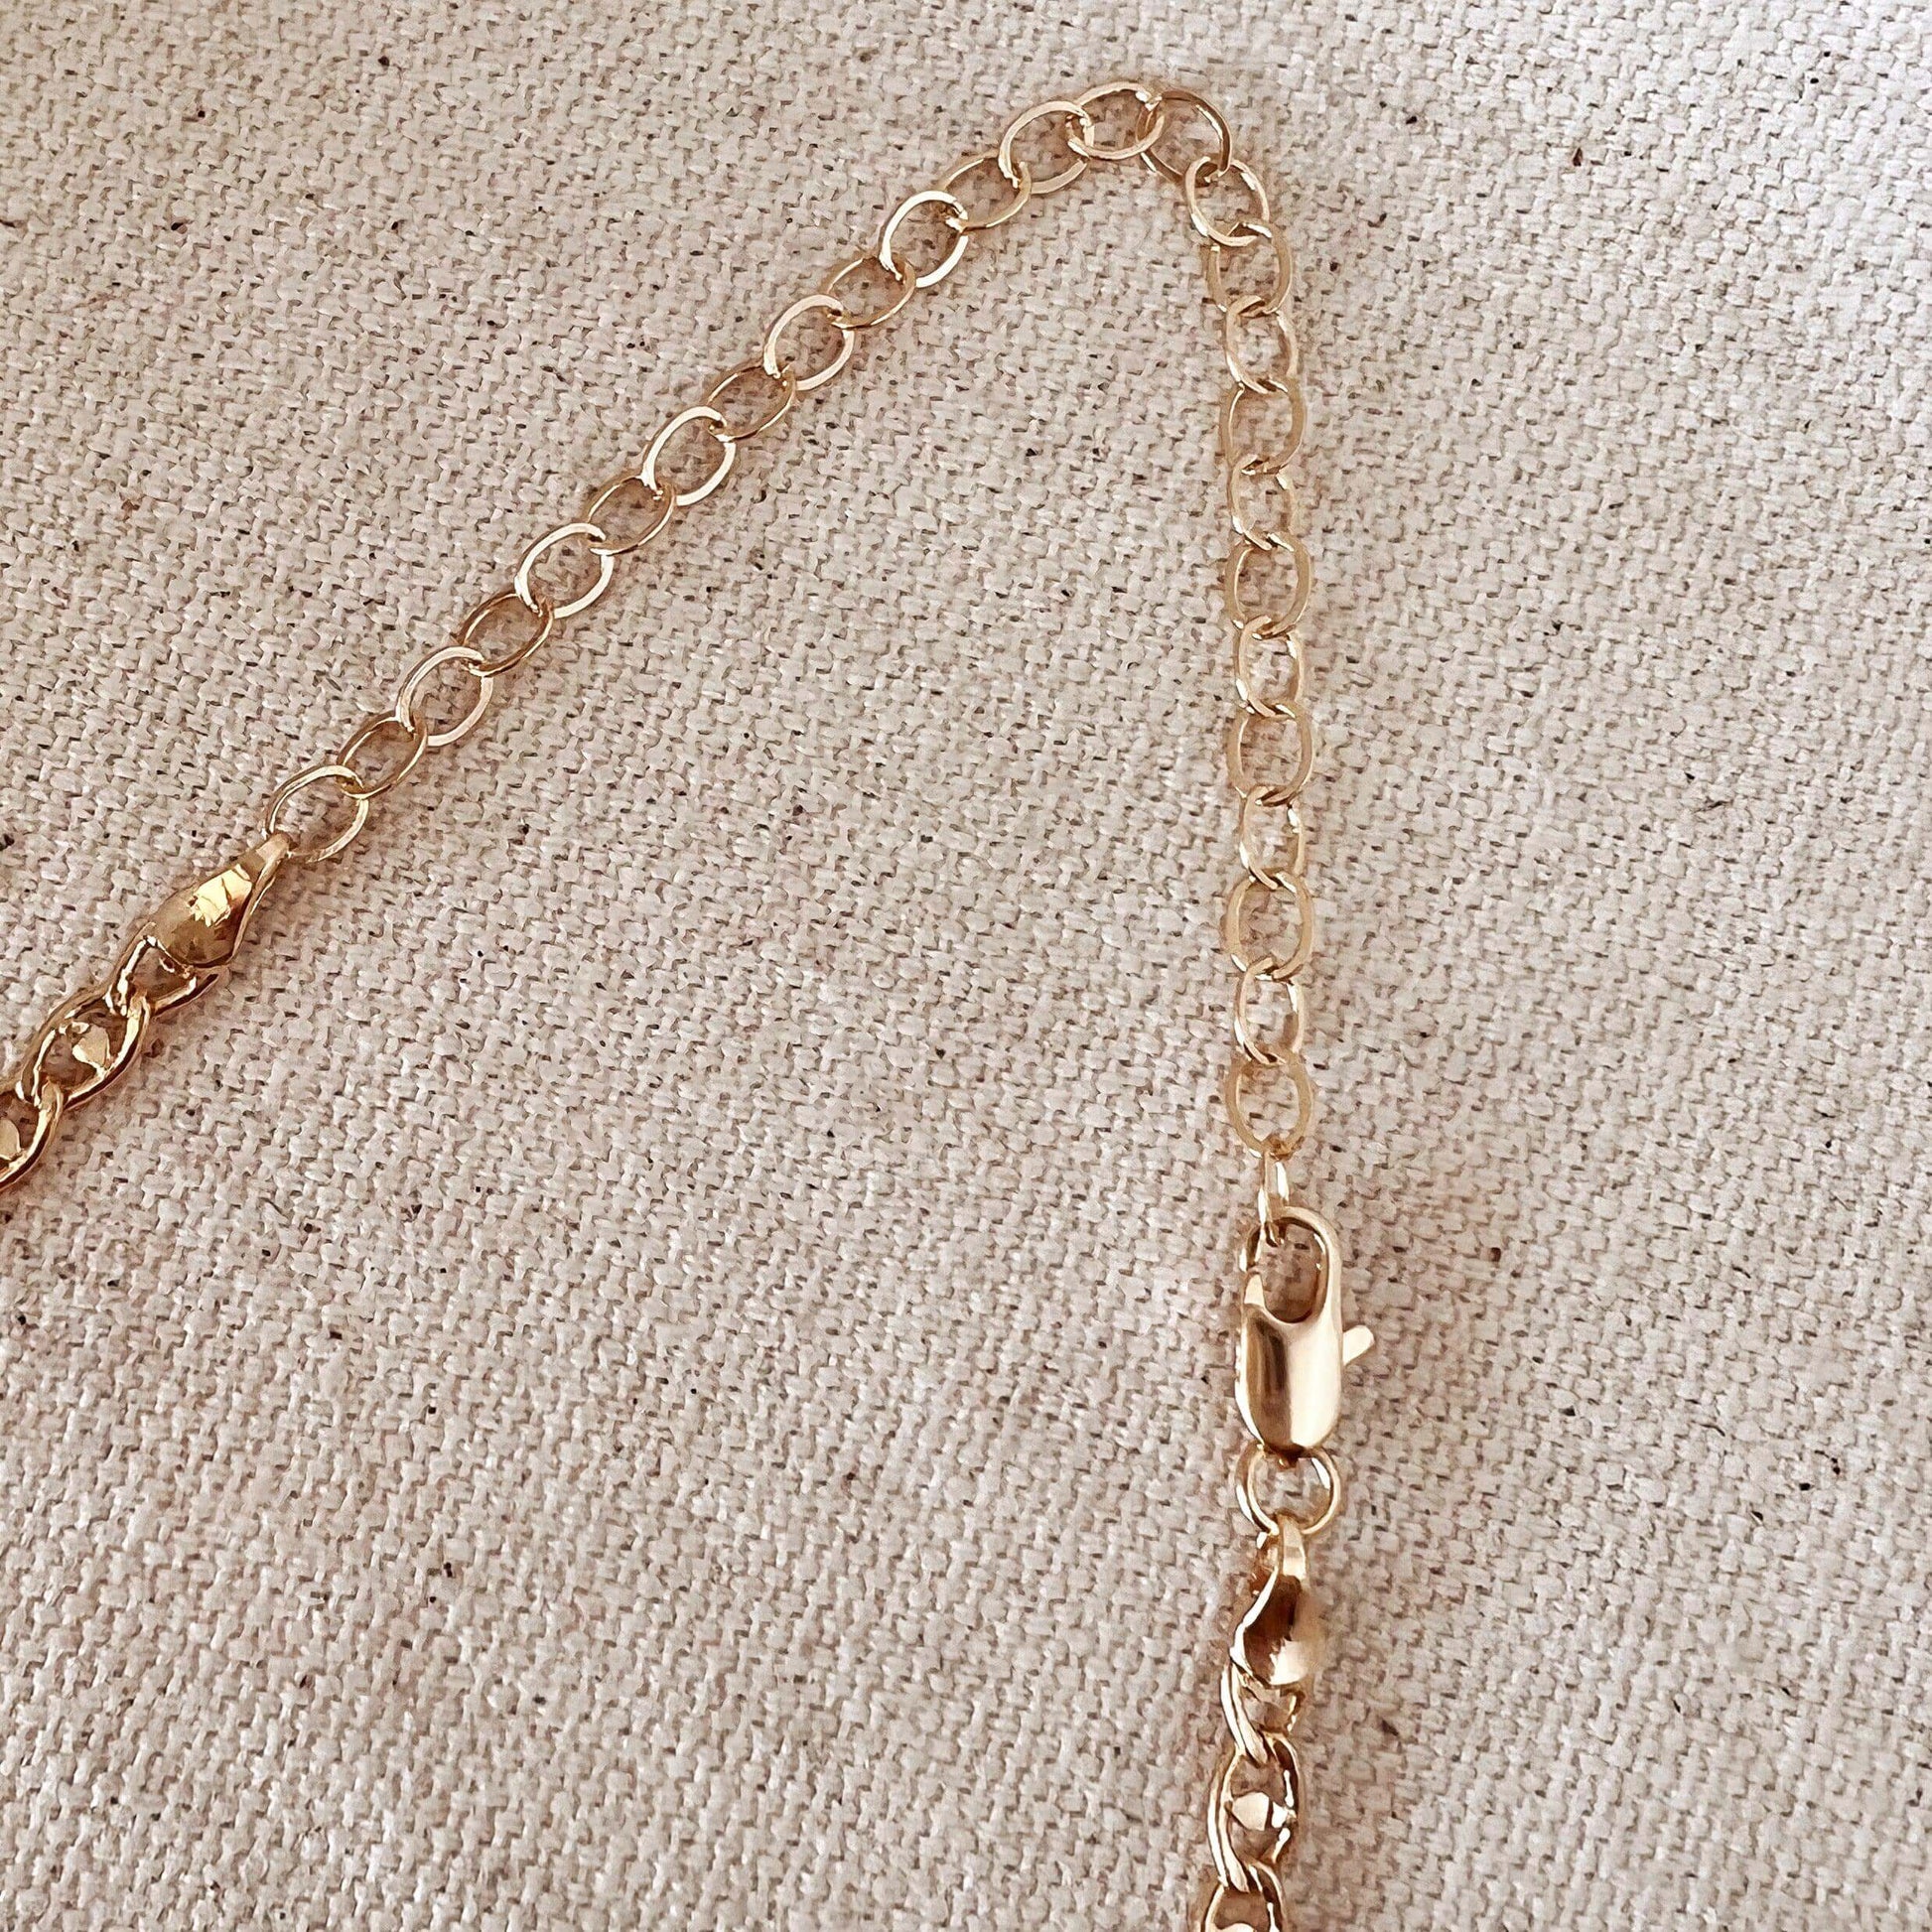 GoldFi Fancy Mariner 18k Gold Filled Necklace